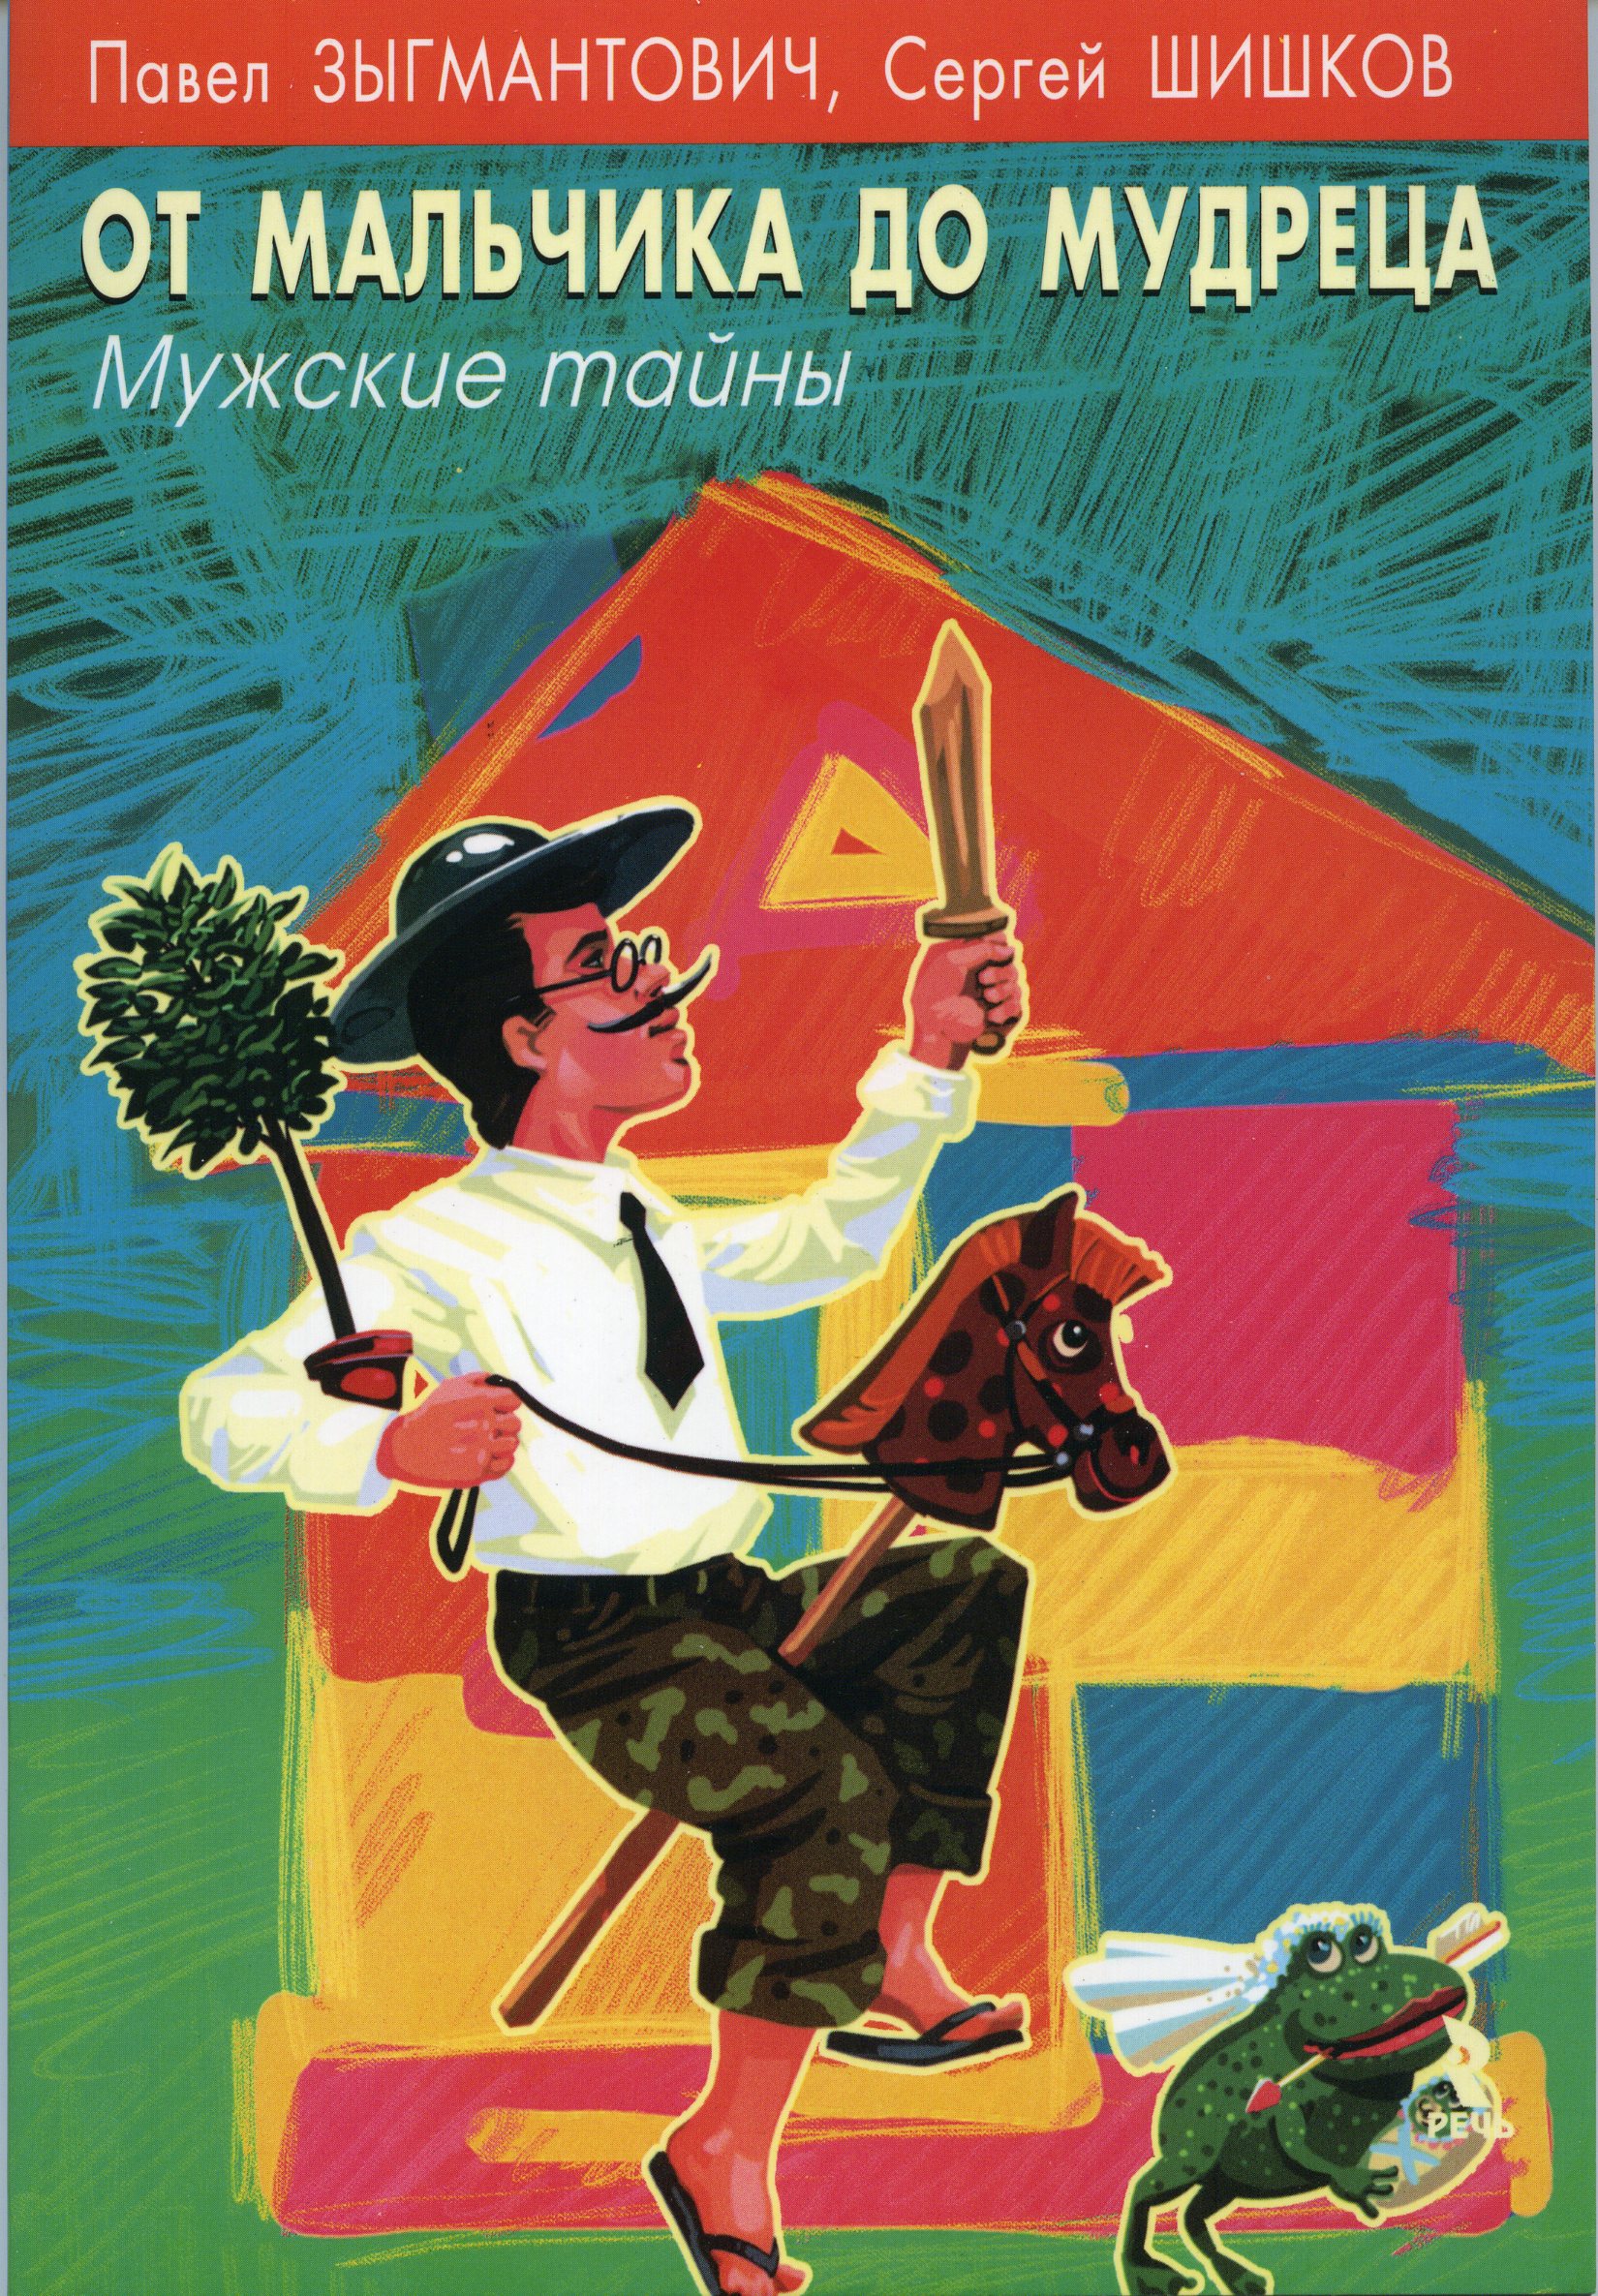 Обложка книги "От мальчика до мудреца: мужские тайны"